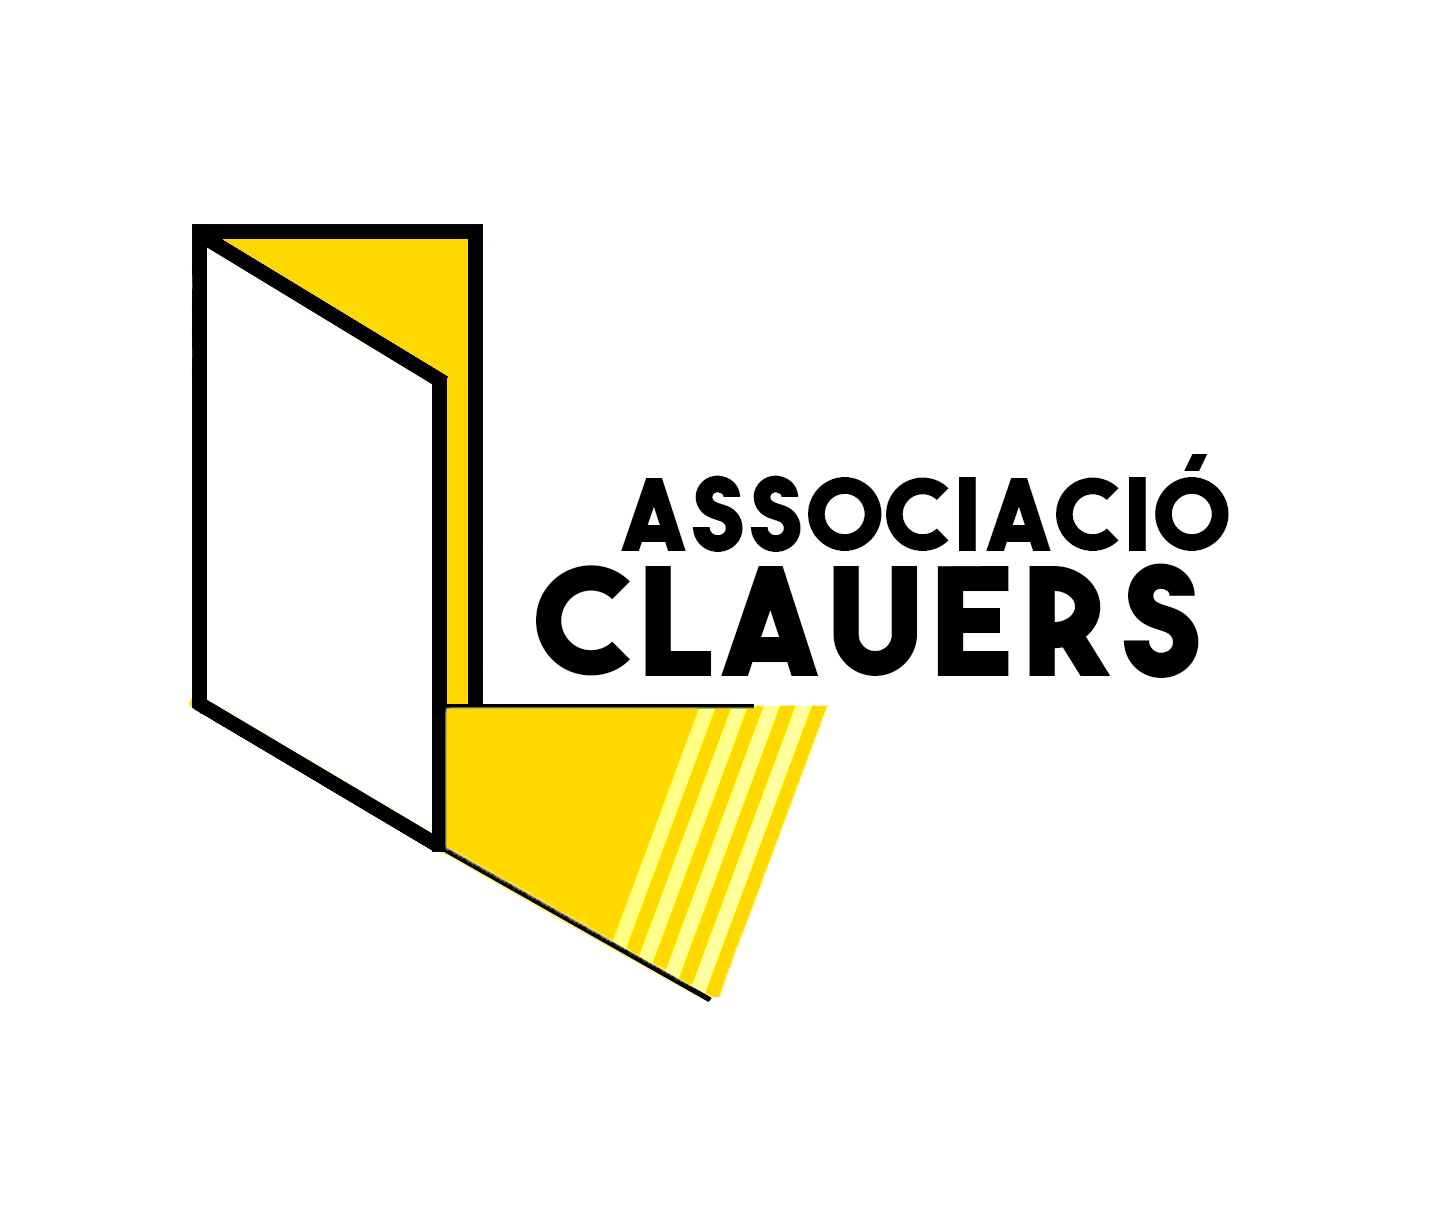 Associació Clauers